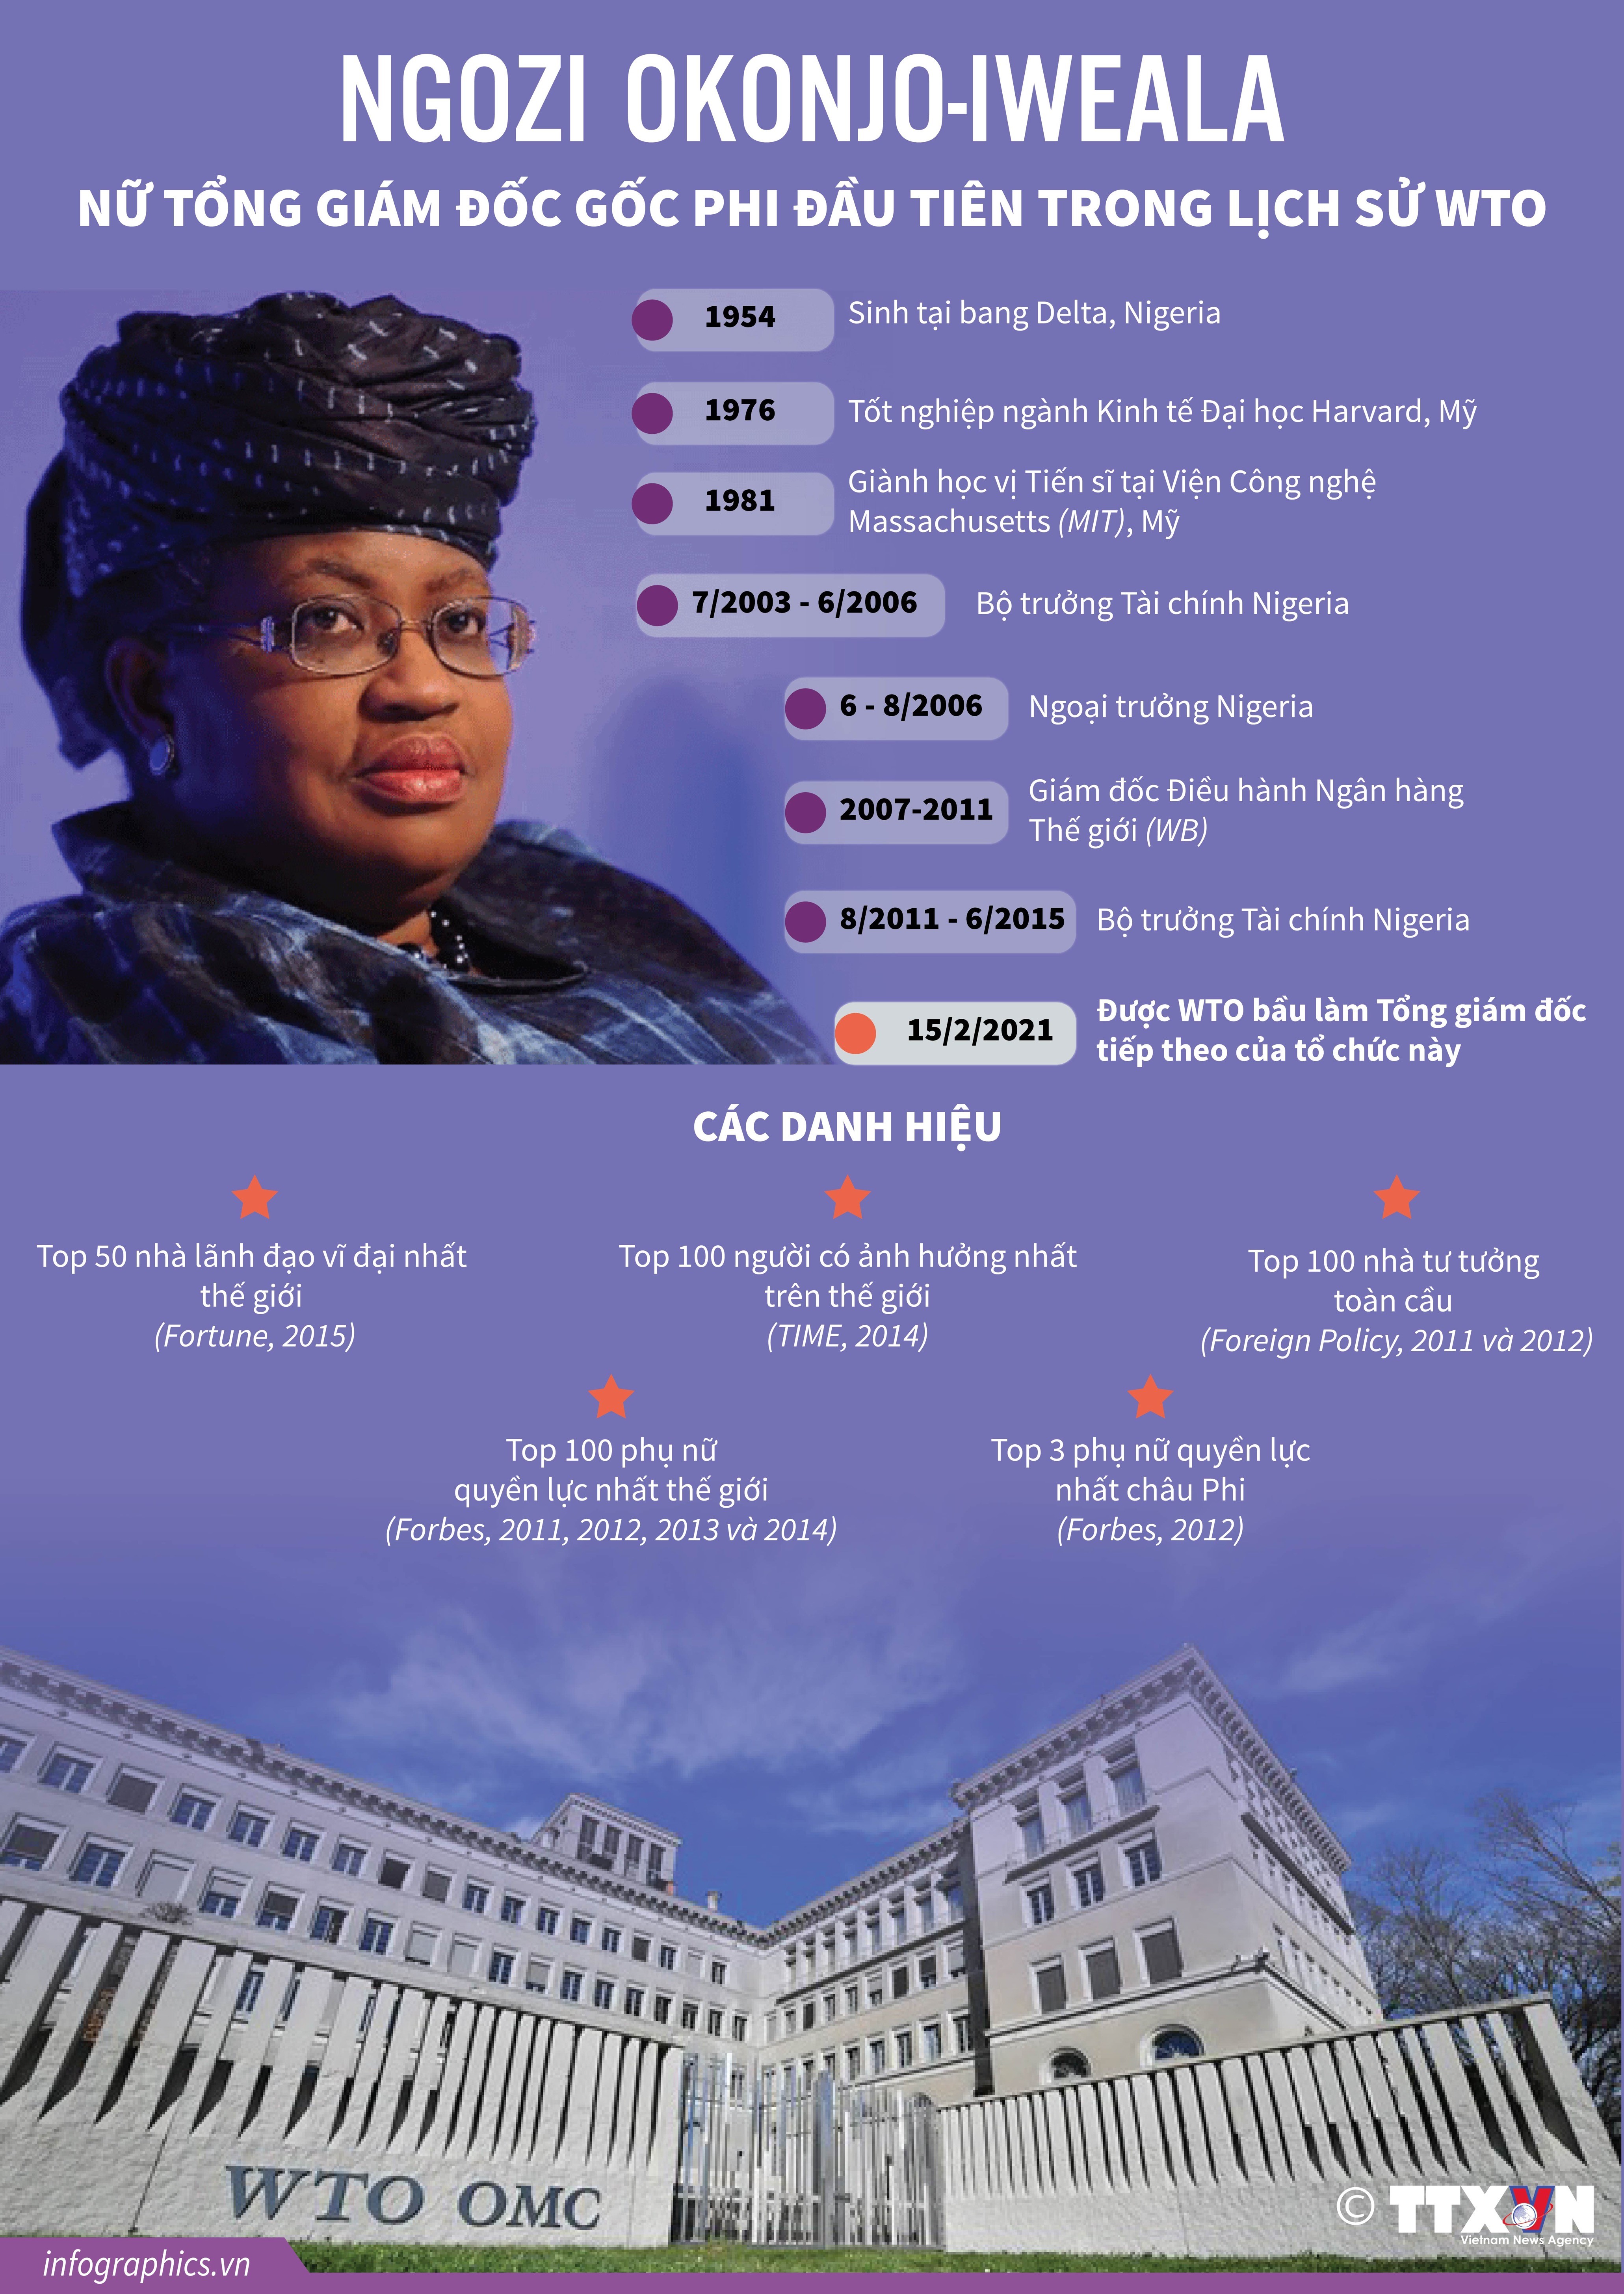 Infographics: Chân dung bà Ngozi Okonjo-Iweala - nữ Tổng giám đốc gốc Phi đầu tiên trong lịch sử WTO